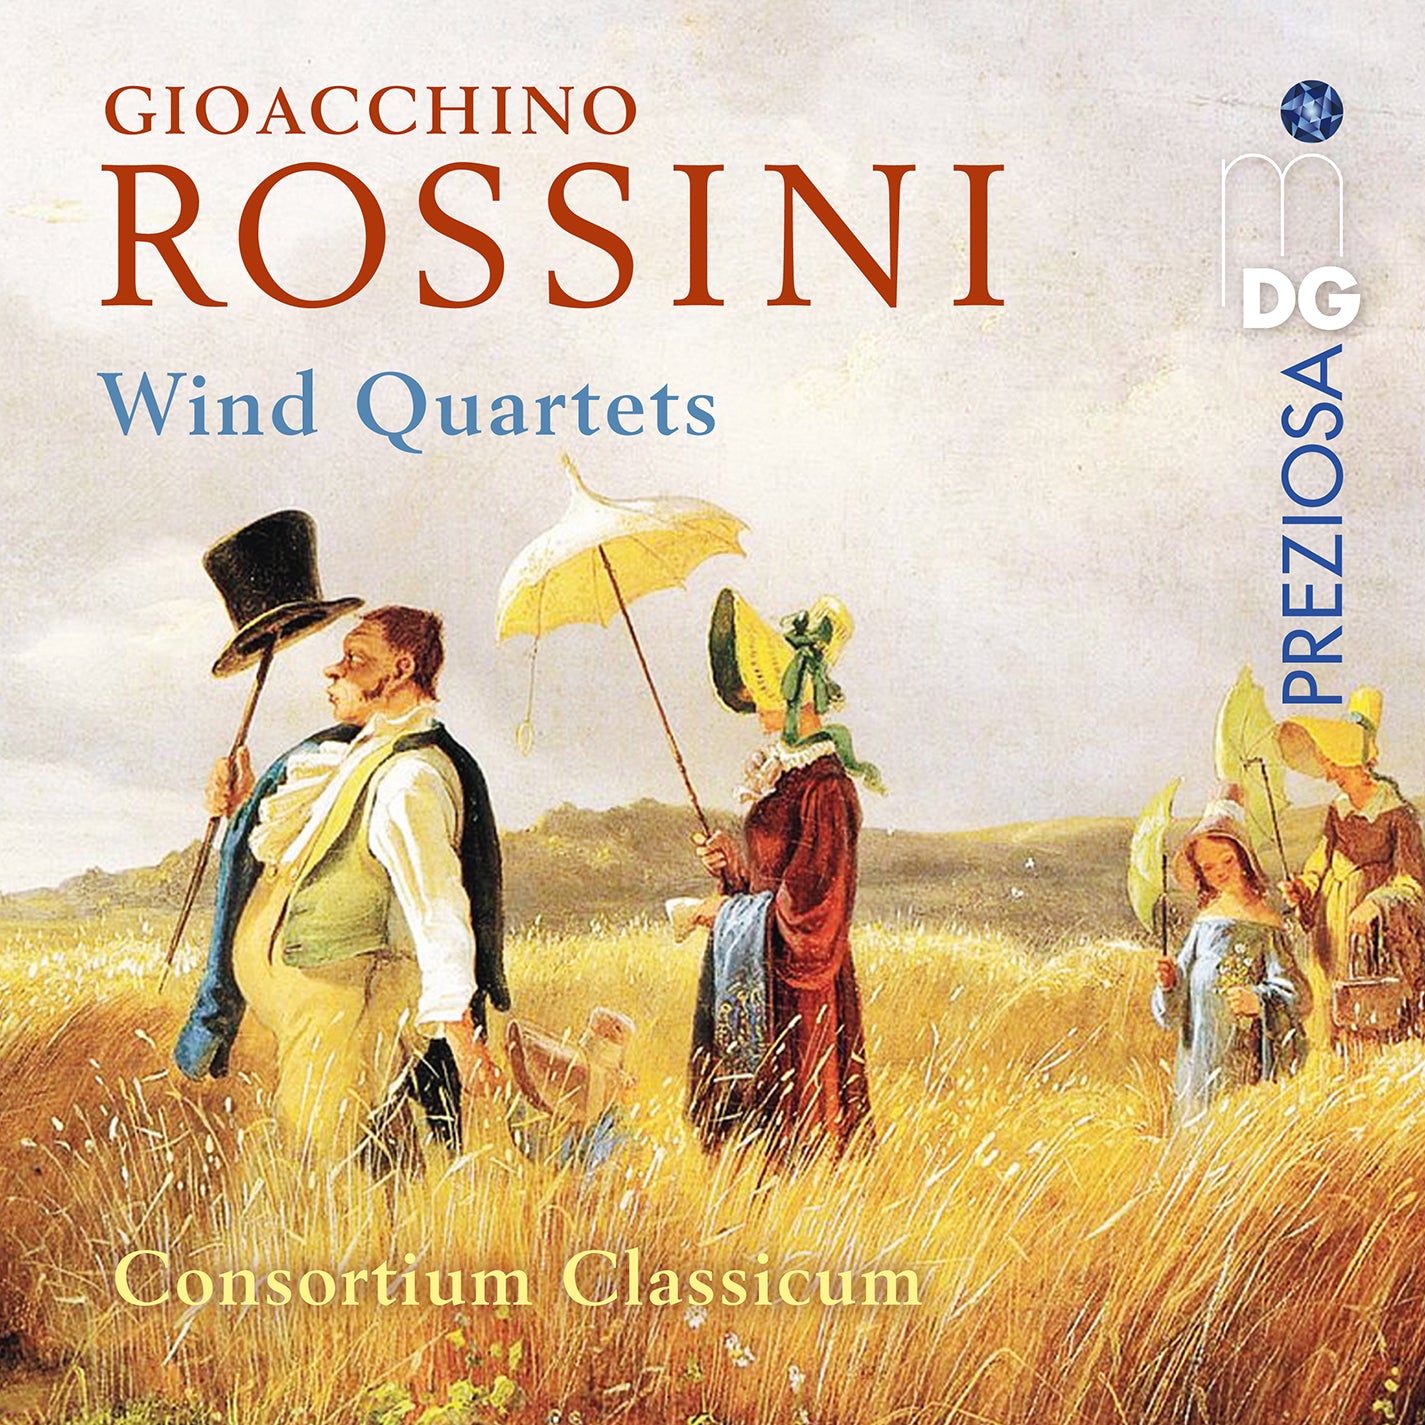 Rossini: Wind Quartets / Consortium Classicum